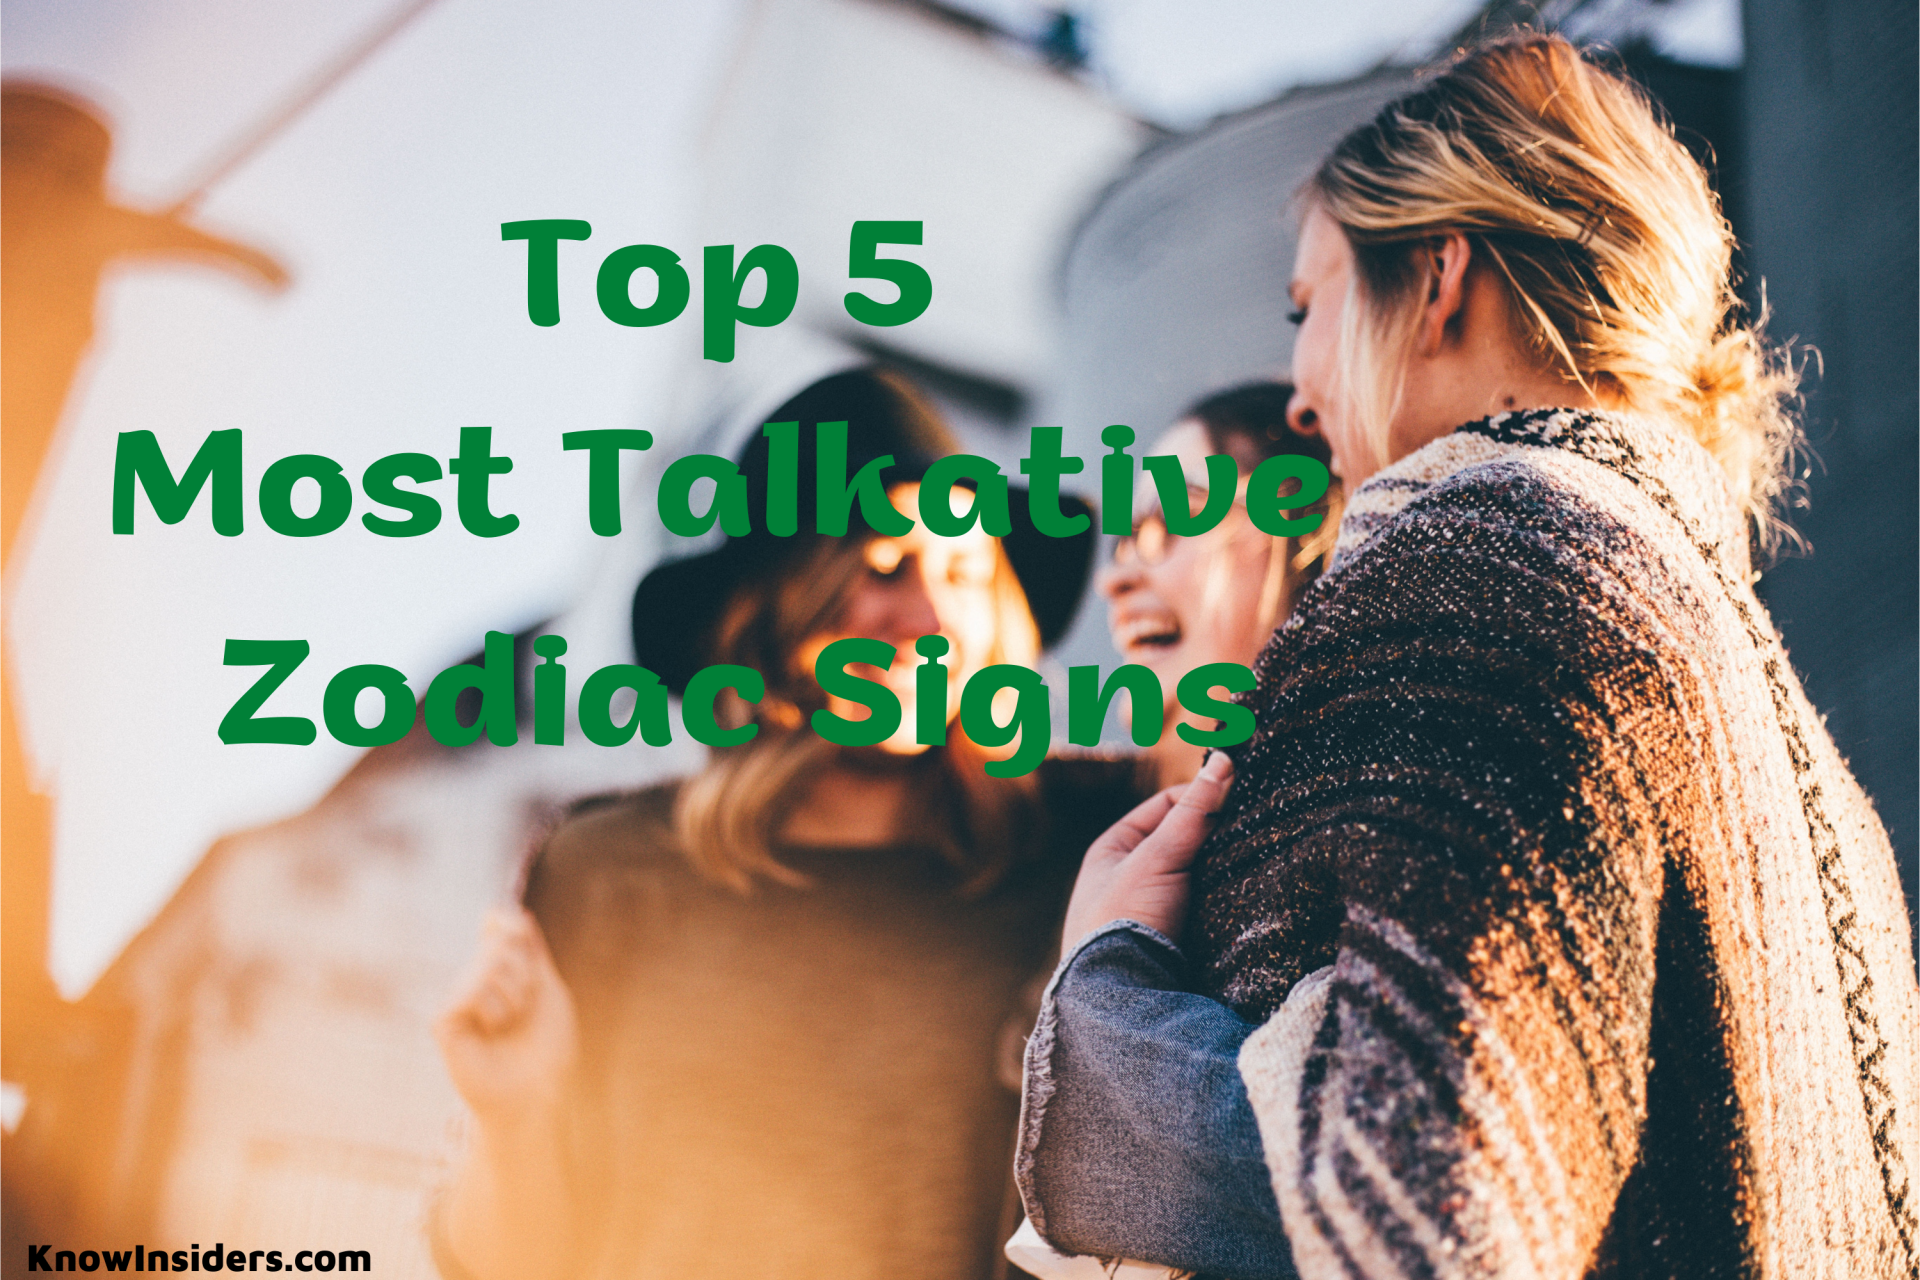 Top 5 Most Talkative Zodiac Signs